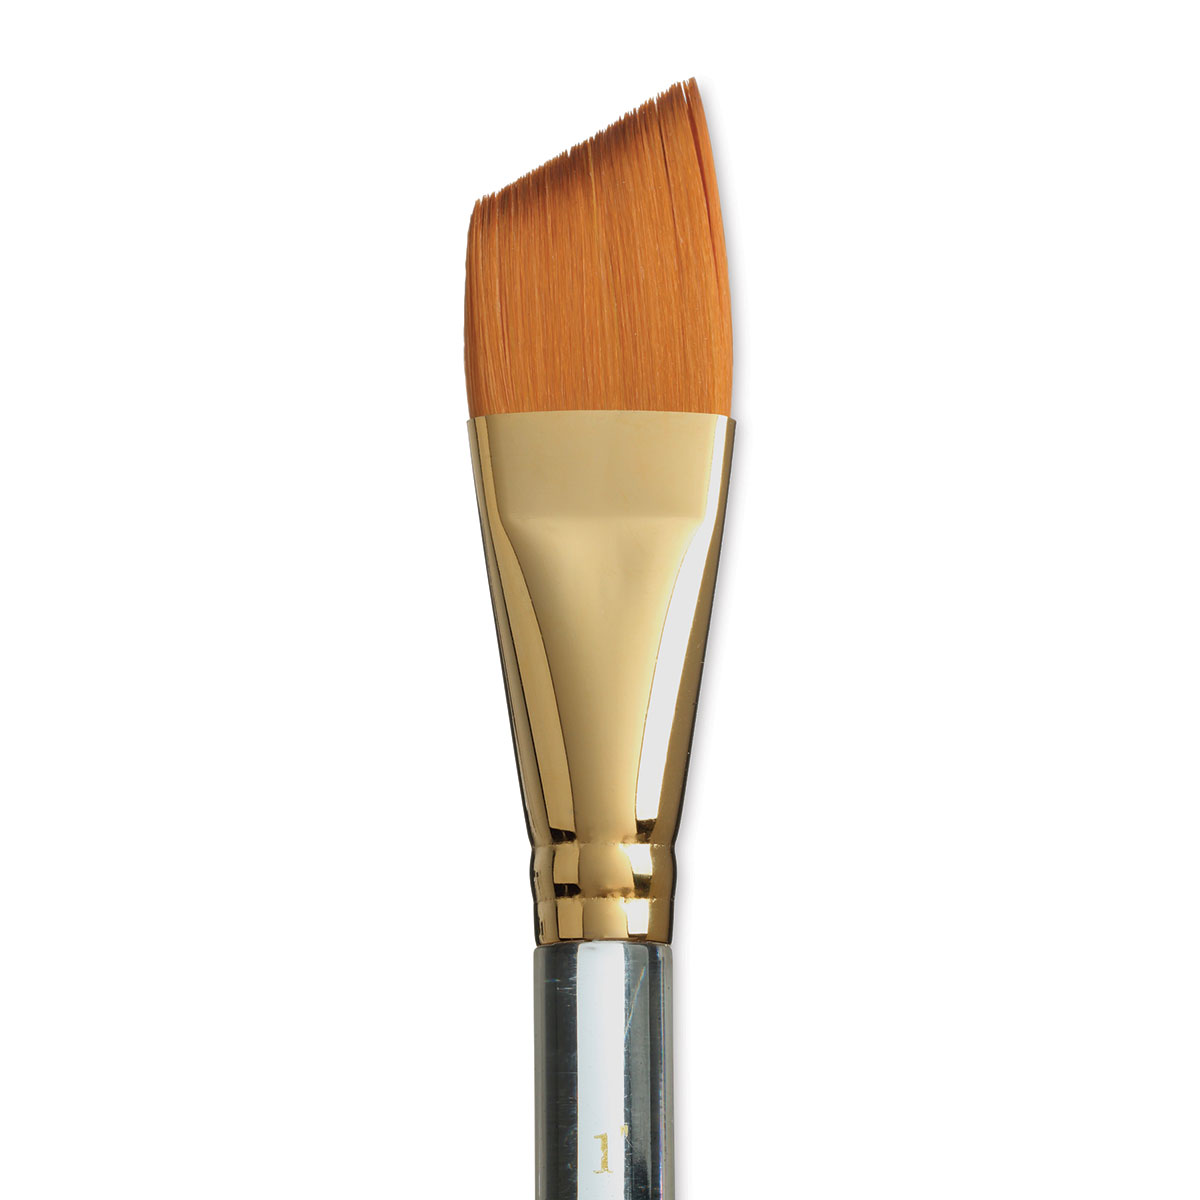 Heritage - Series 4050 - Princeton Brush Company